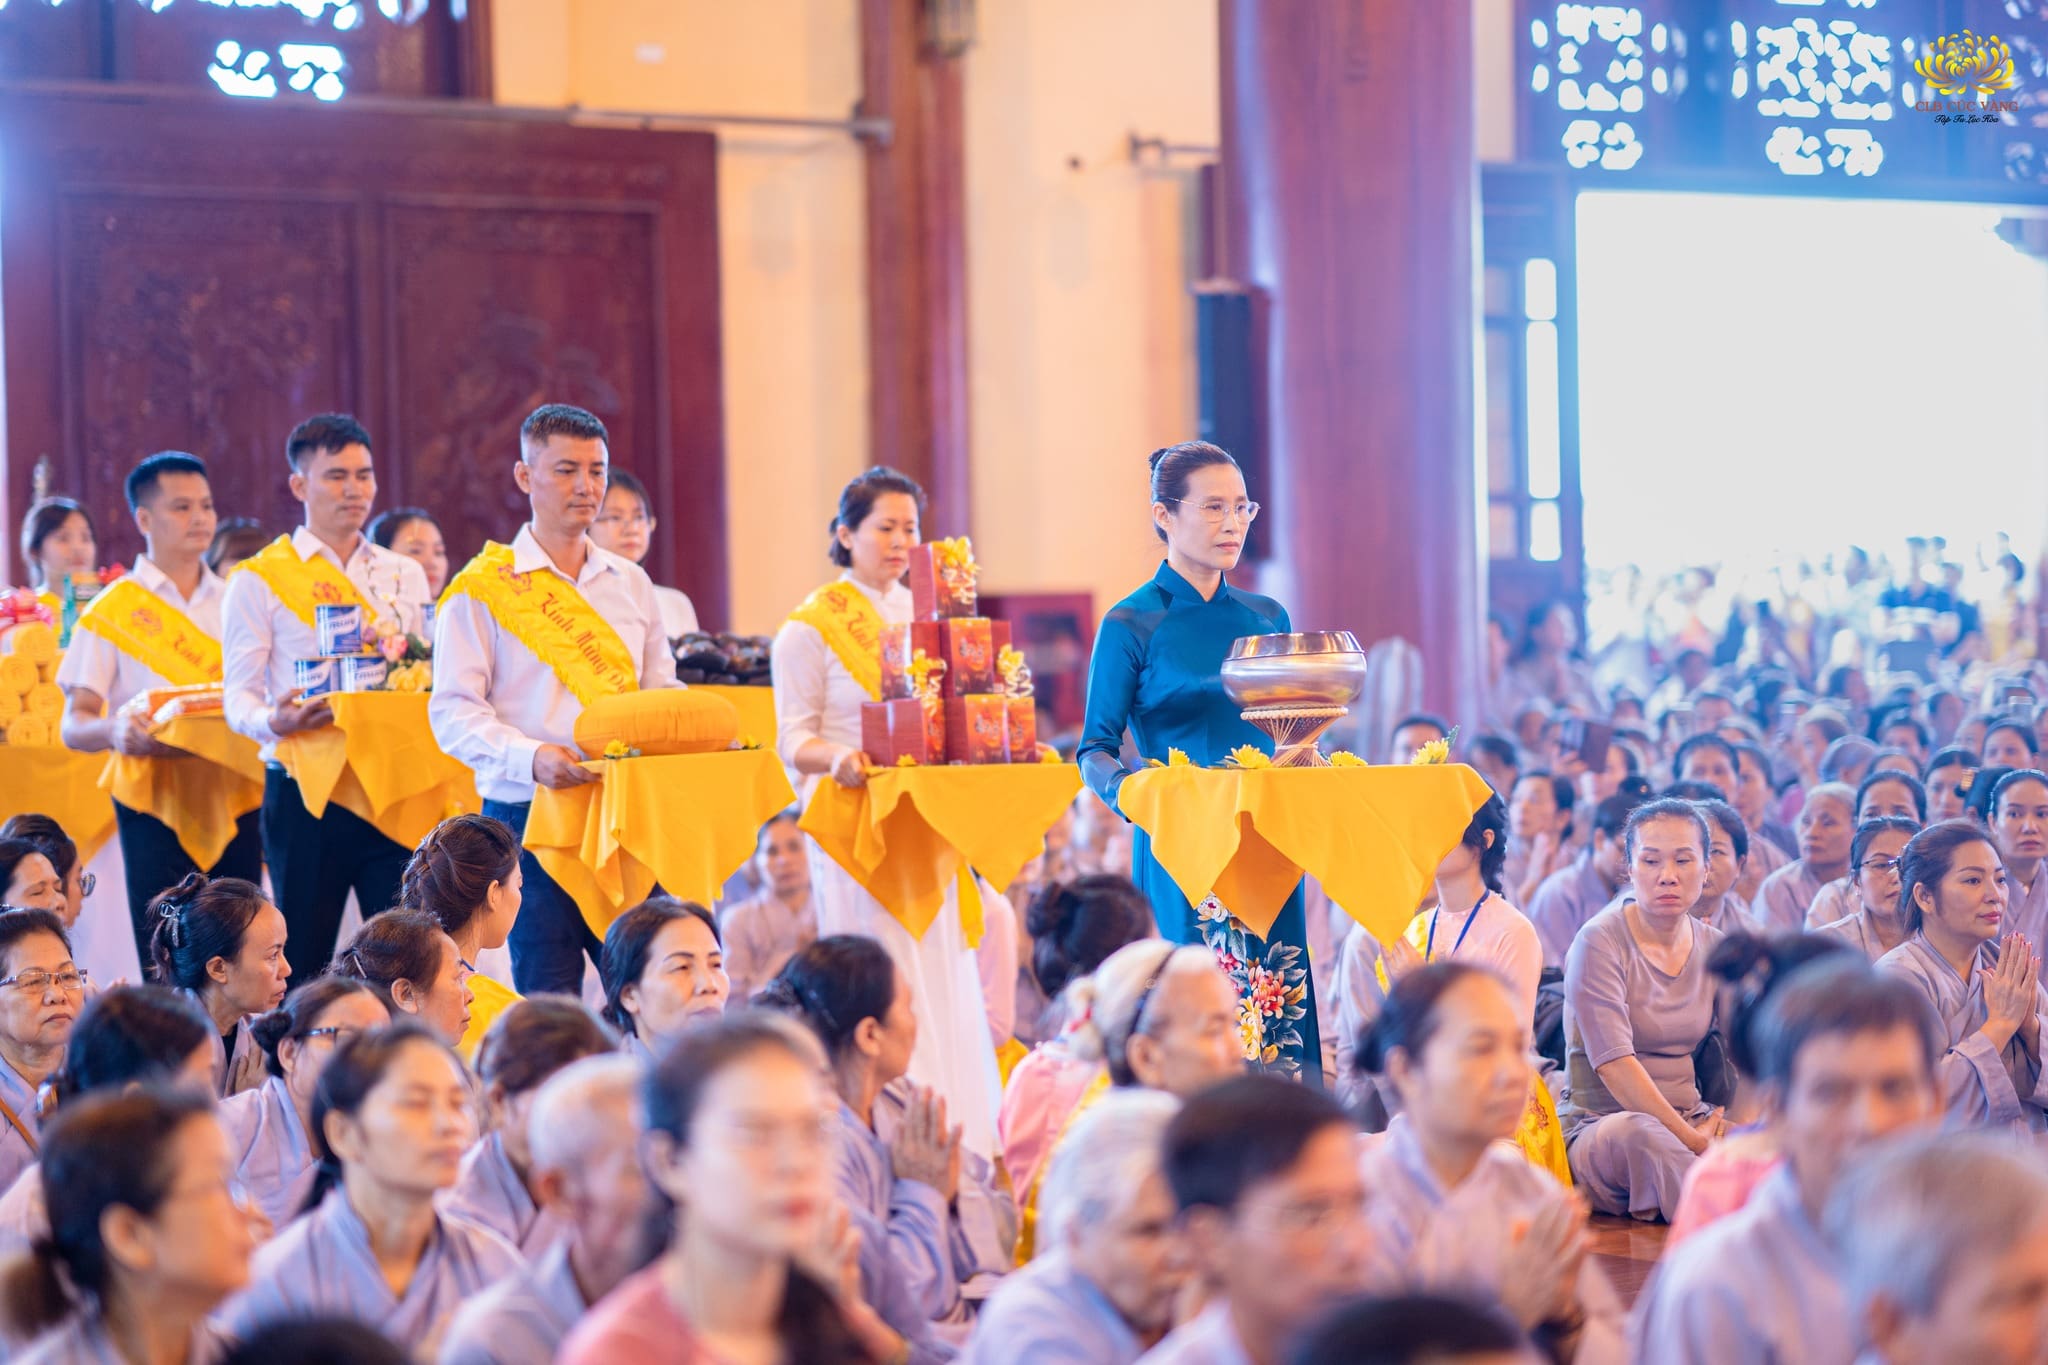 Cô Phạm Thị Yến đại diện cho nhân dân, Phật tử thập phương và các Phật tử trong CLB Cúc Vàng dâng phẩm vật cúng dường tứ sự đến chư Tăng nhân mùa Vu lan báo hiếu